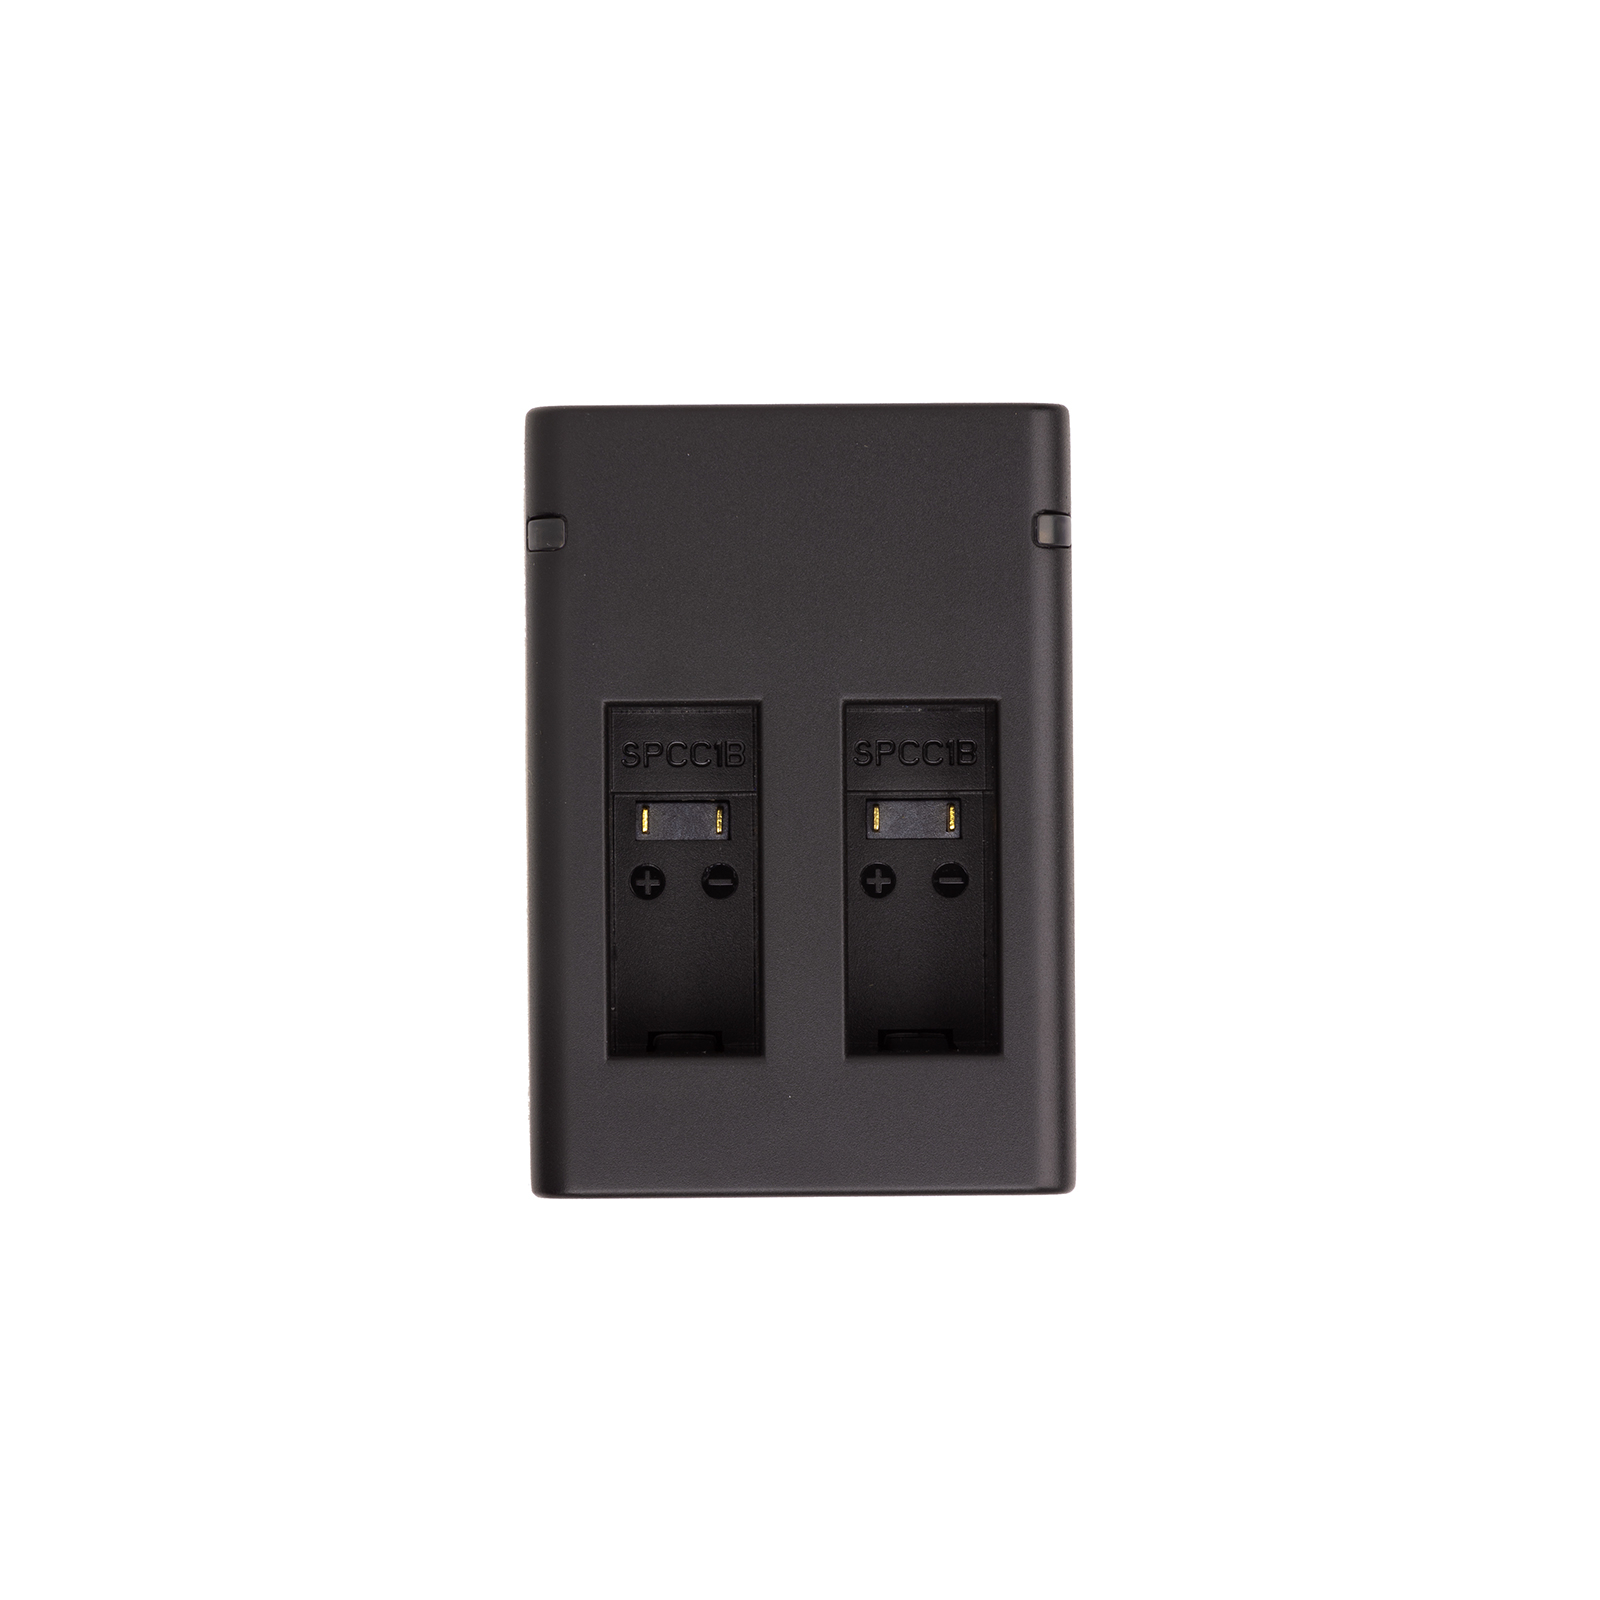 Зарядное устройство для фото PowerPlant GoPro SPCC1B 2 slots (CH980260)